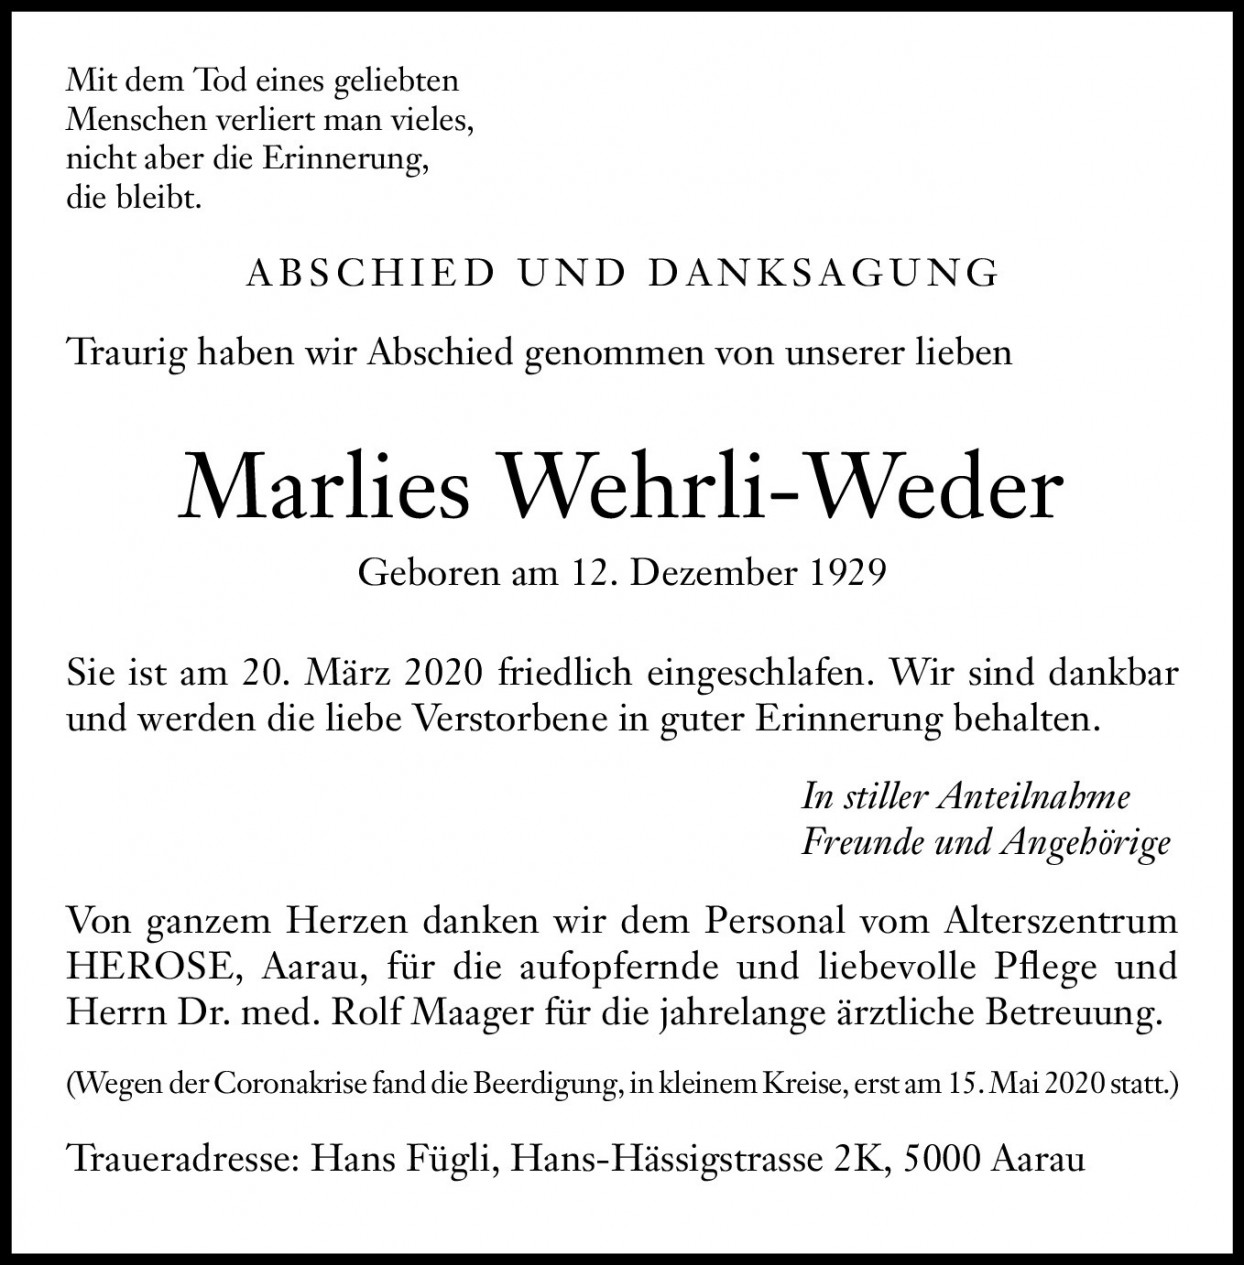 Marlies Wehrli-Weder